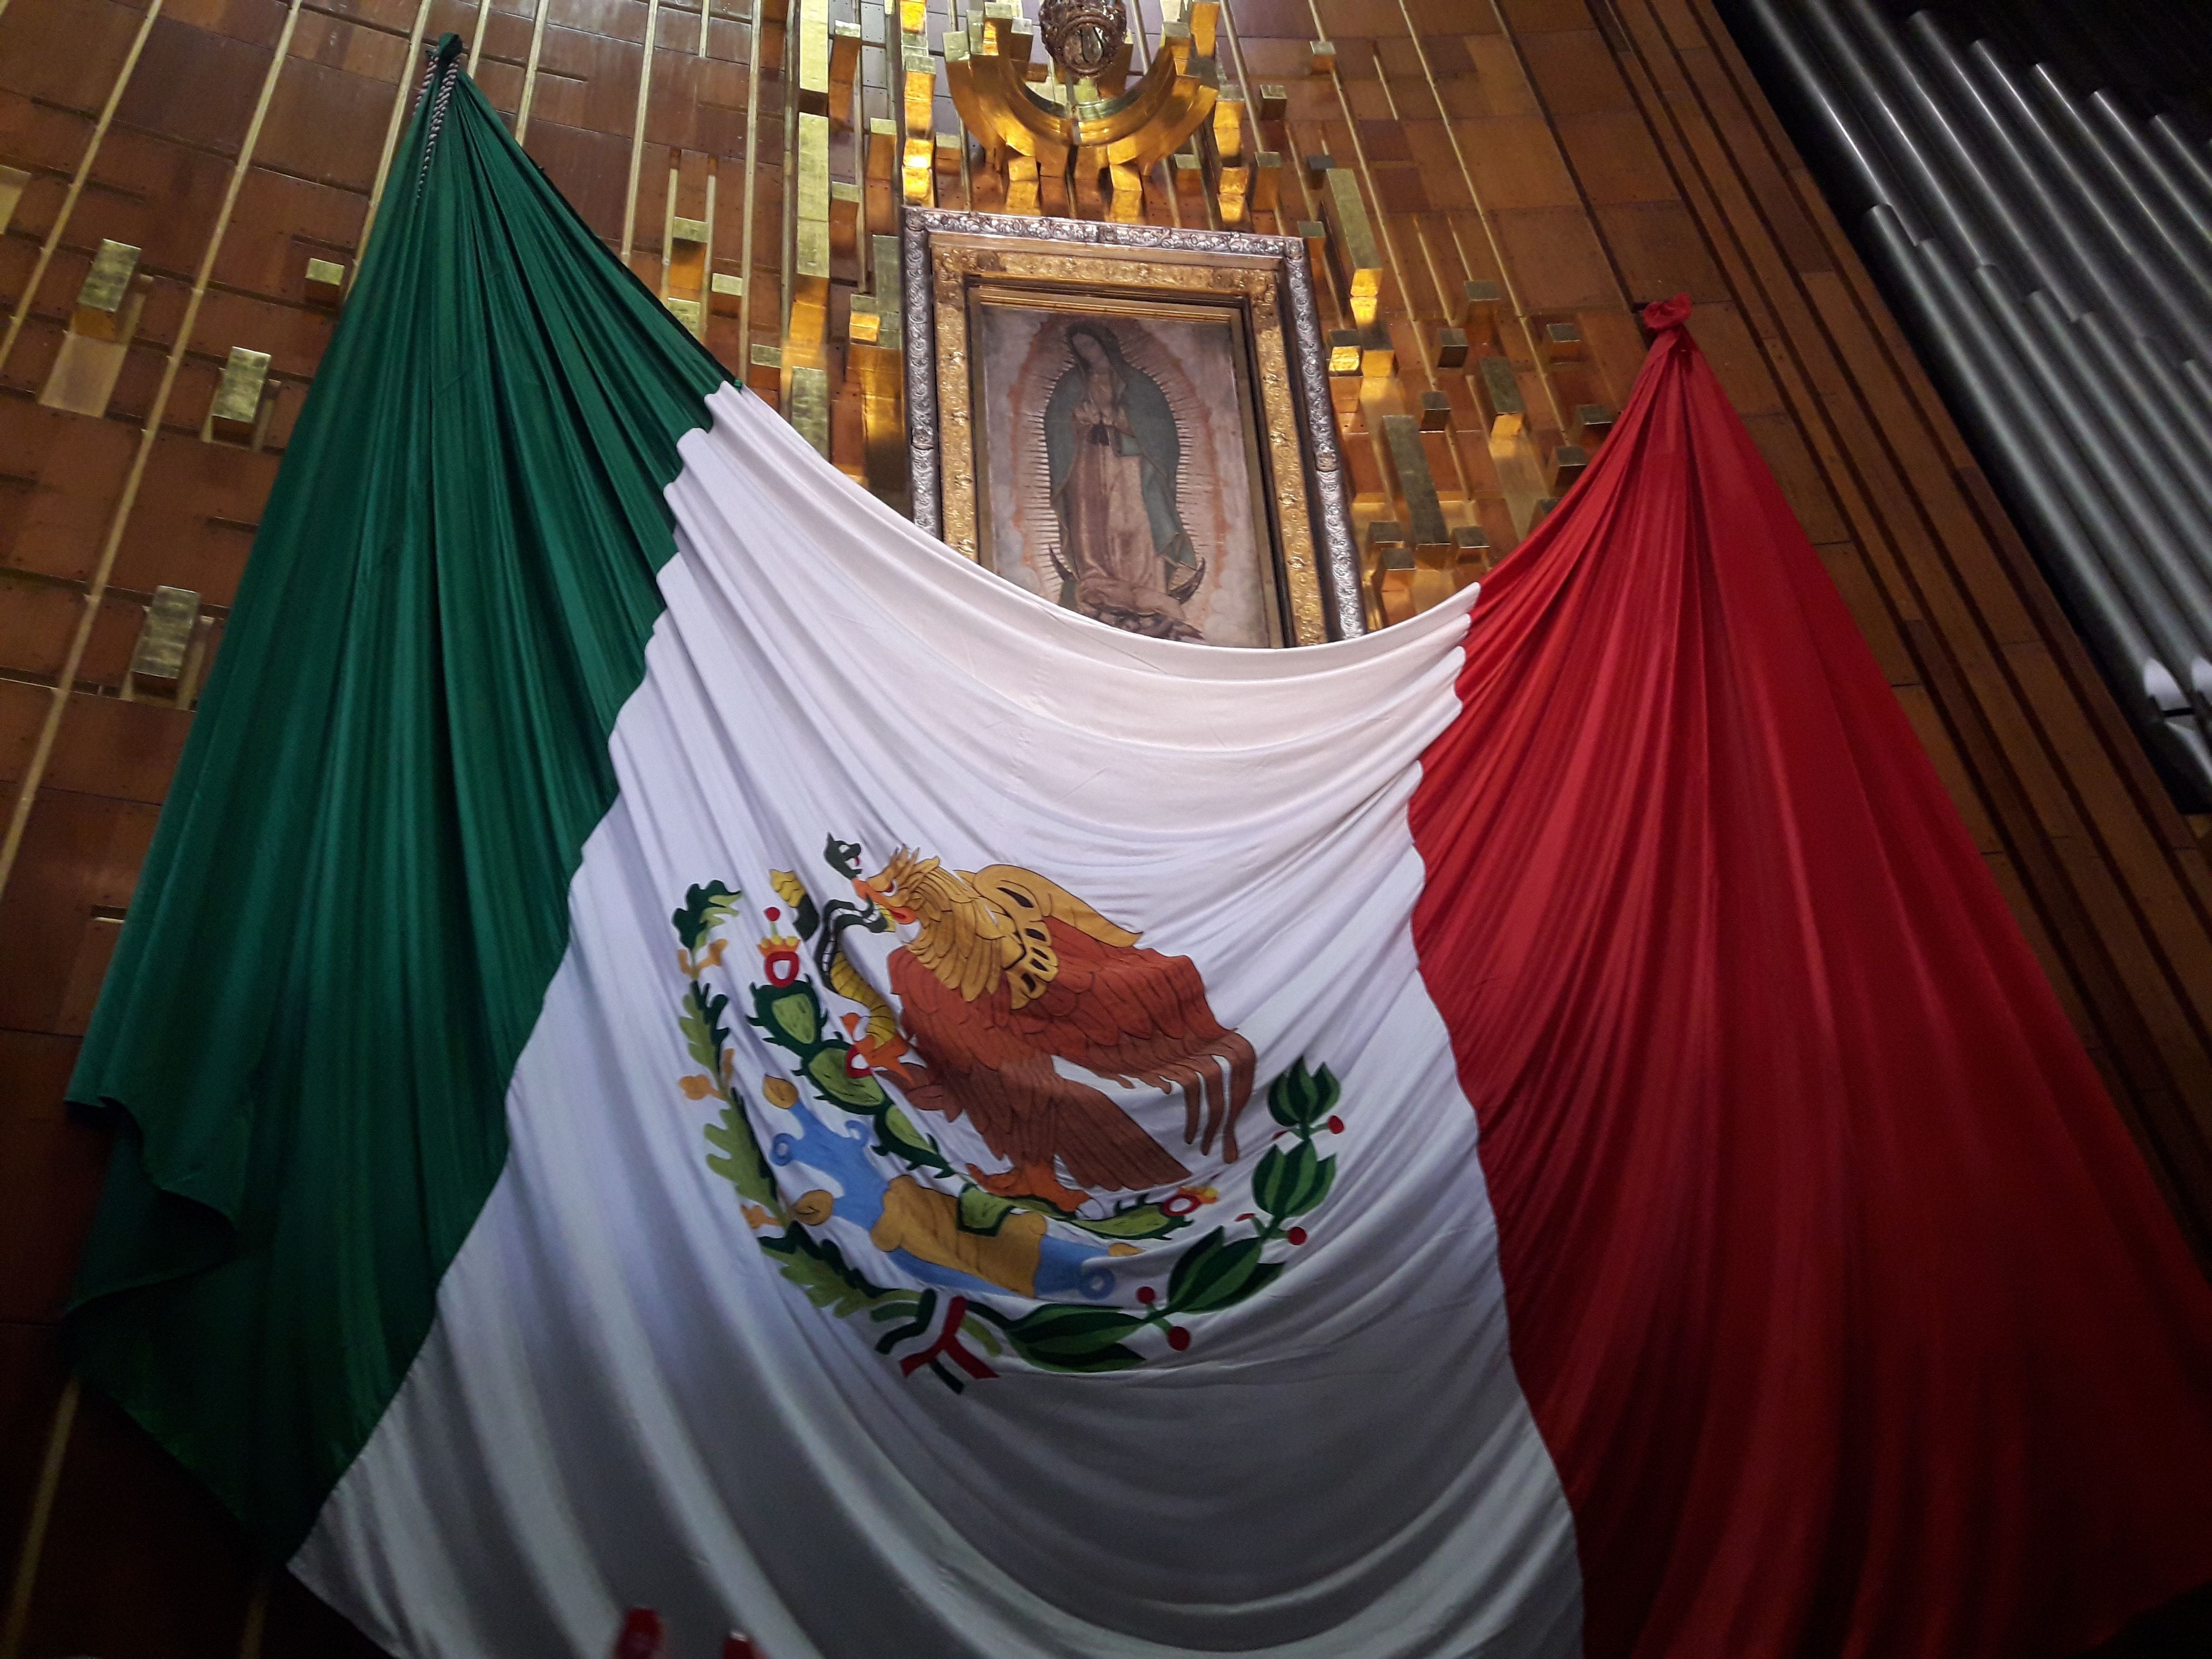 La Iglesia católica mexicana criticó el fallo del aborto y afirmó que propicia el  “machismo” y la “muerte”